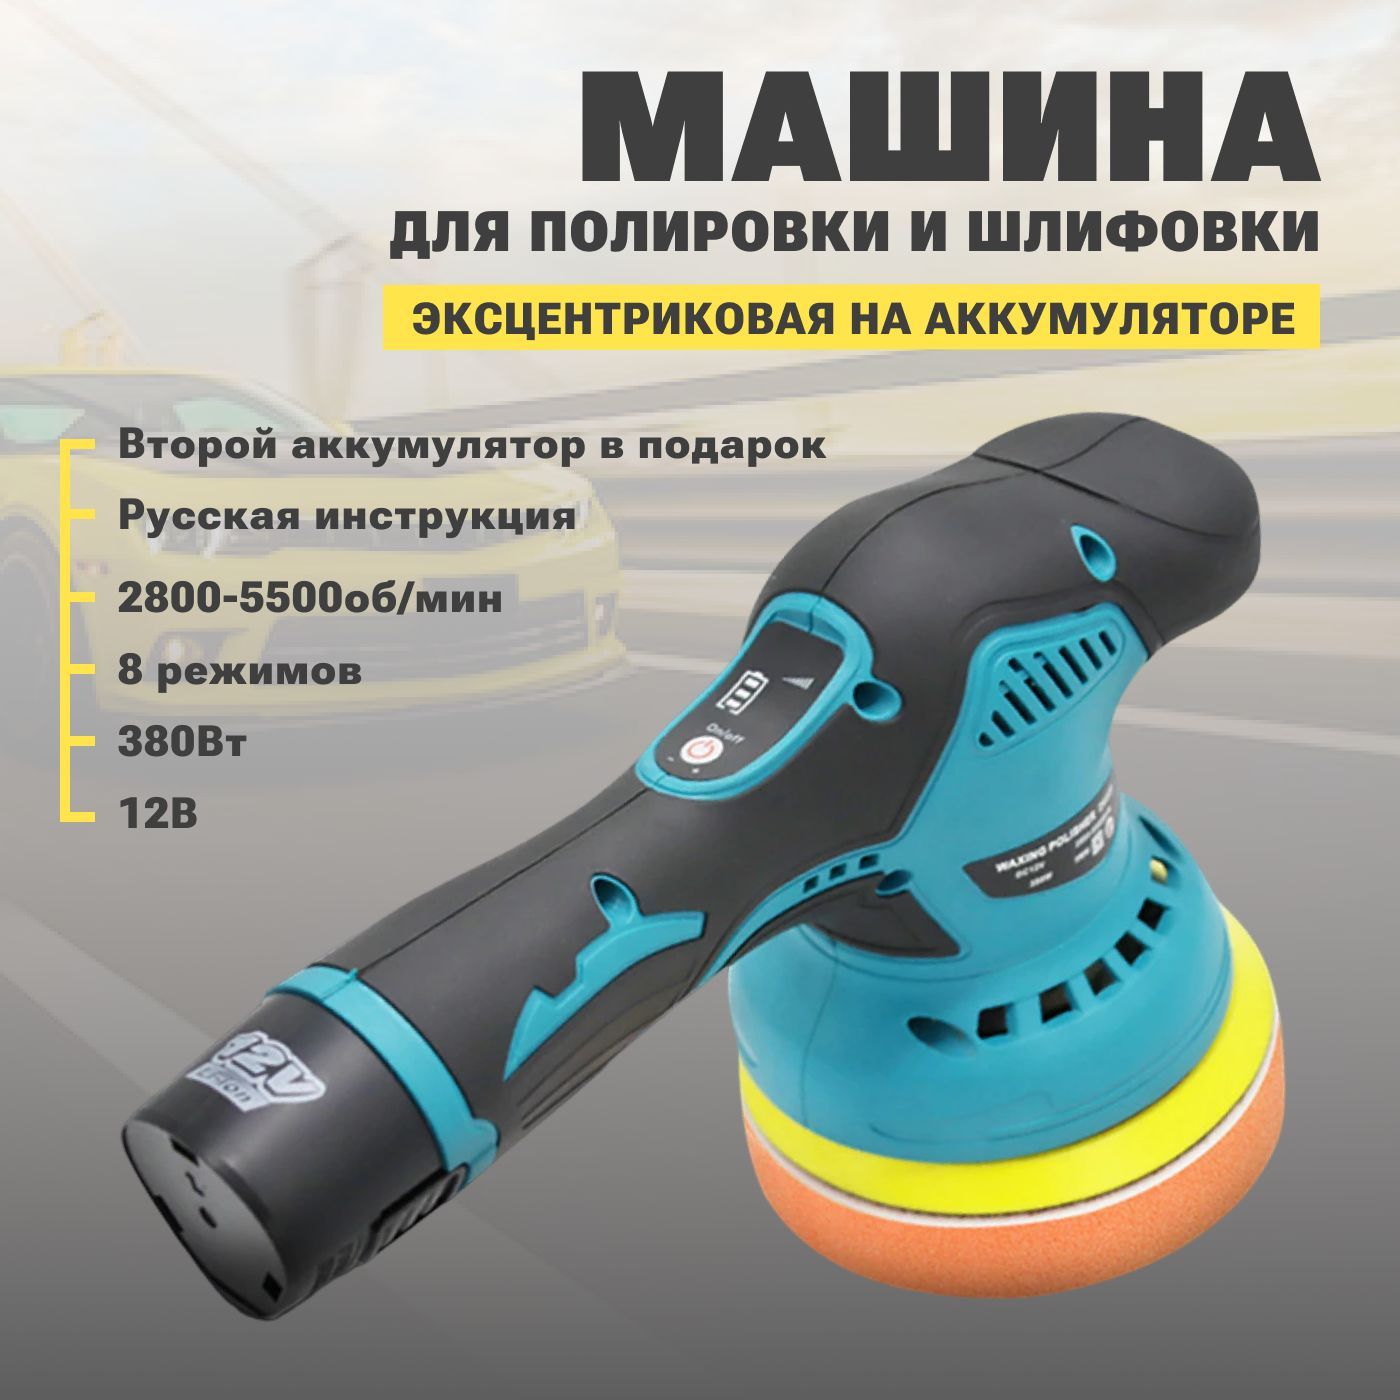 Купить полировальную машинку для авто | Машинка для полировки: цена в Киеве, Украине